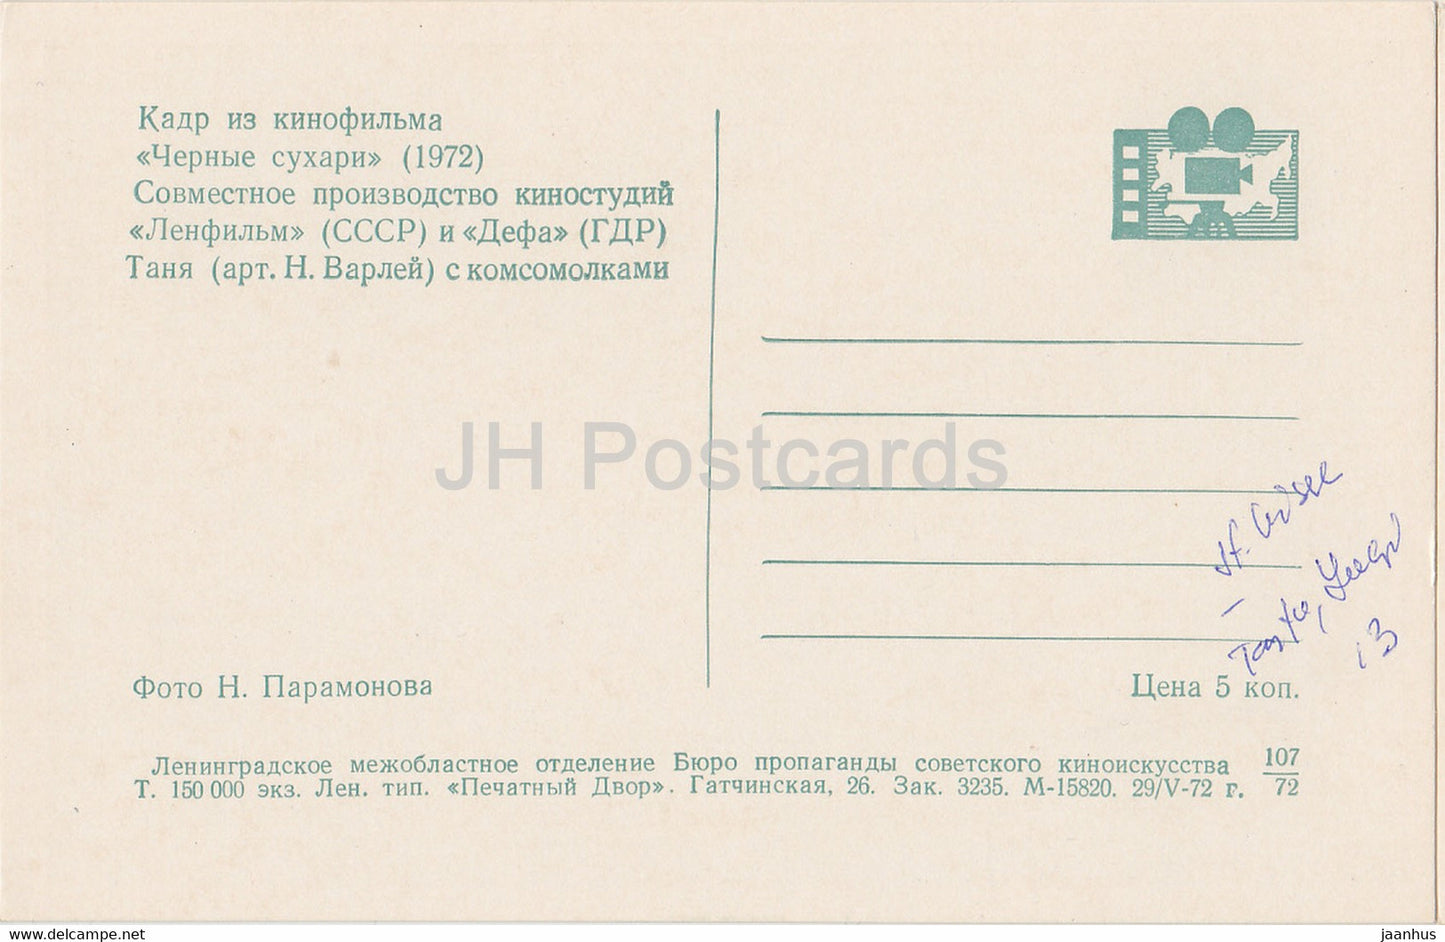 Black Crackers – Schauspielerin N. Varley – Film – Film – Sowjet – 1972 – Russland UdSSR – unbenutzt